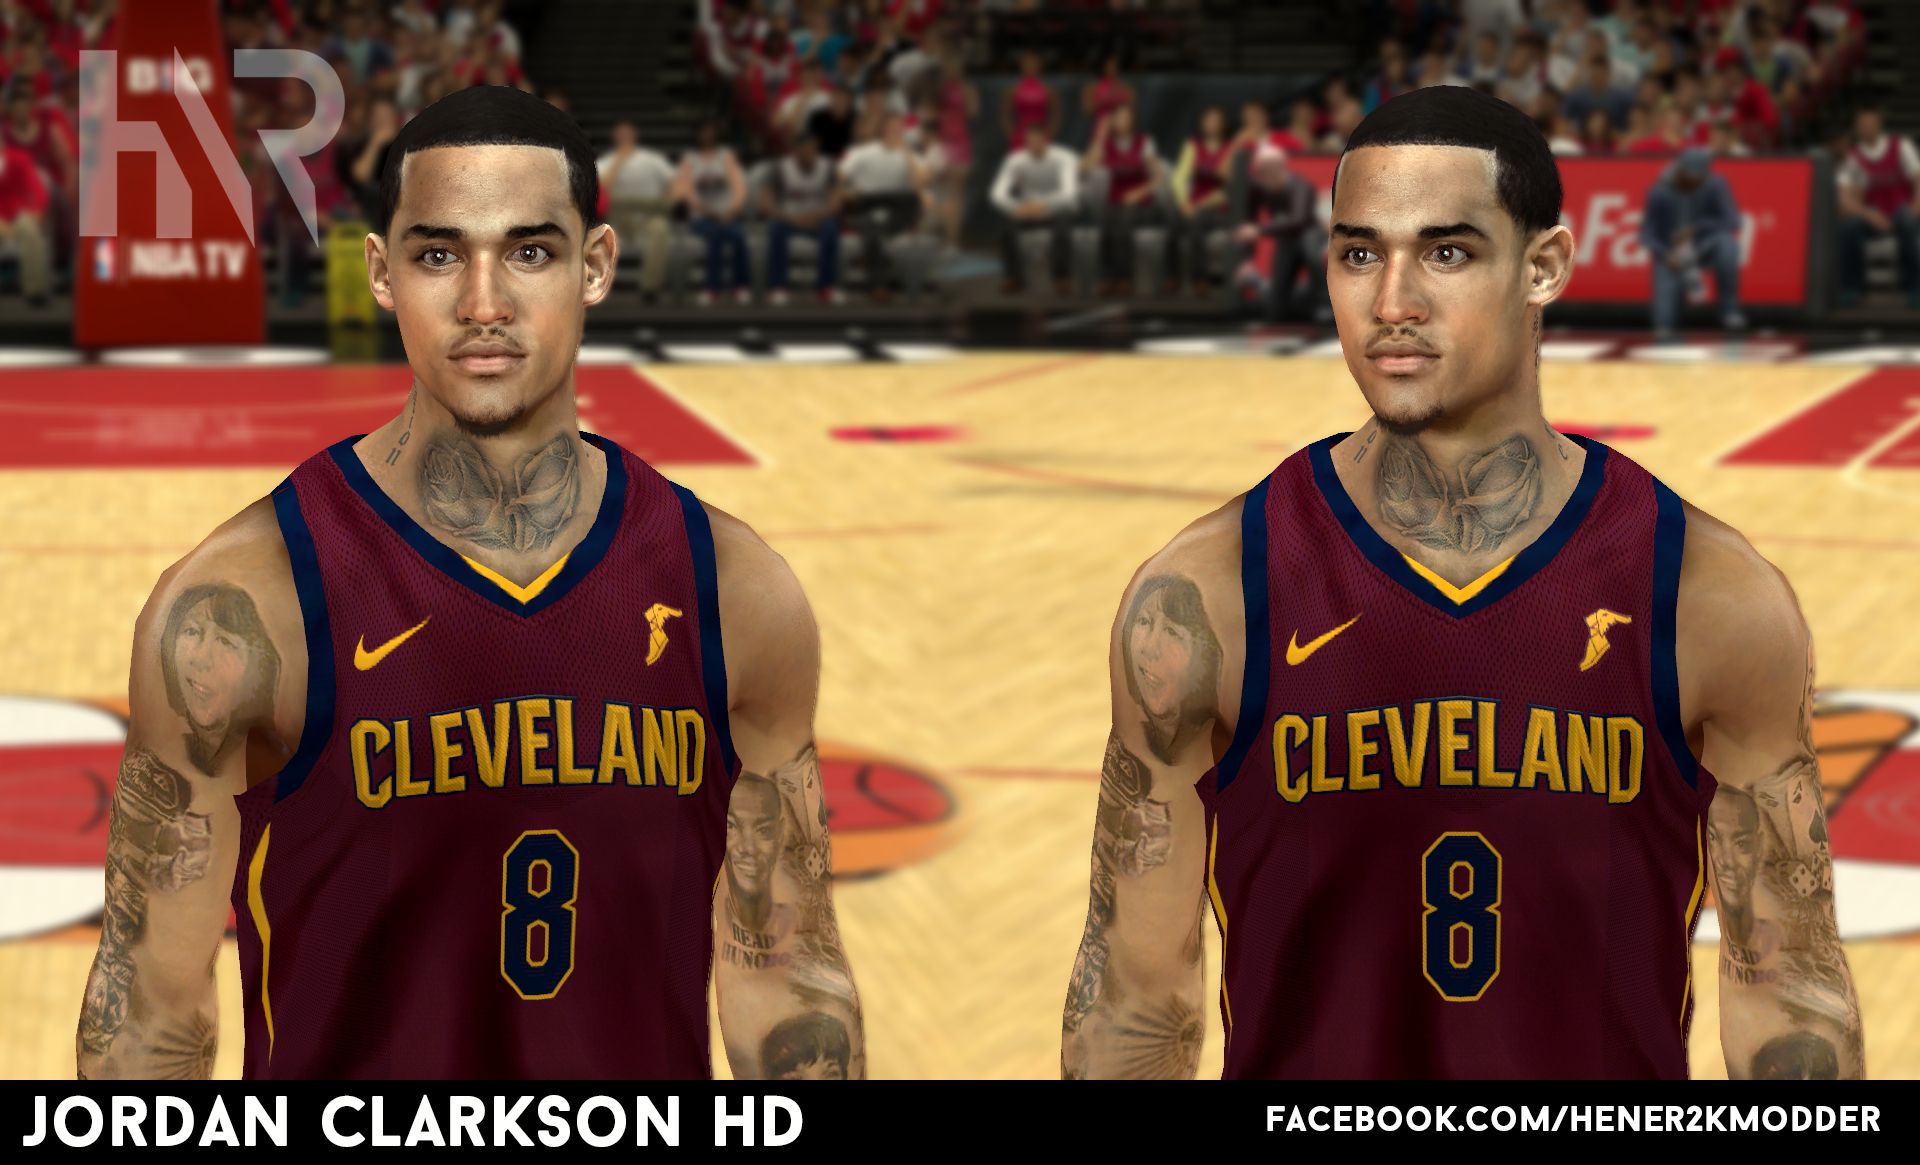 Create Jordan Clarkson NBA 2K14 